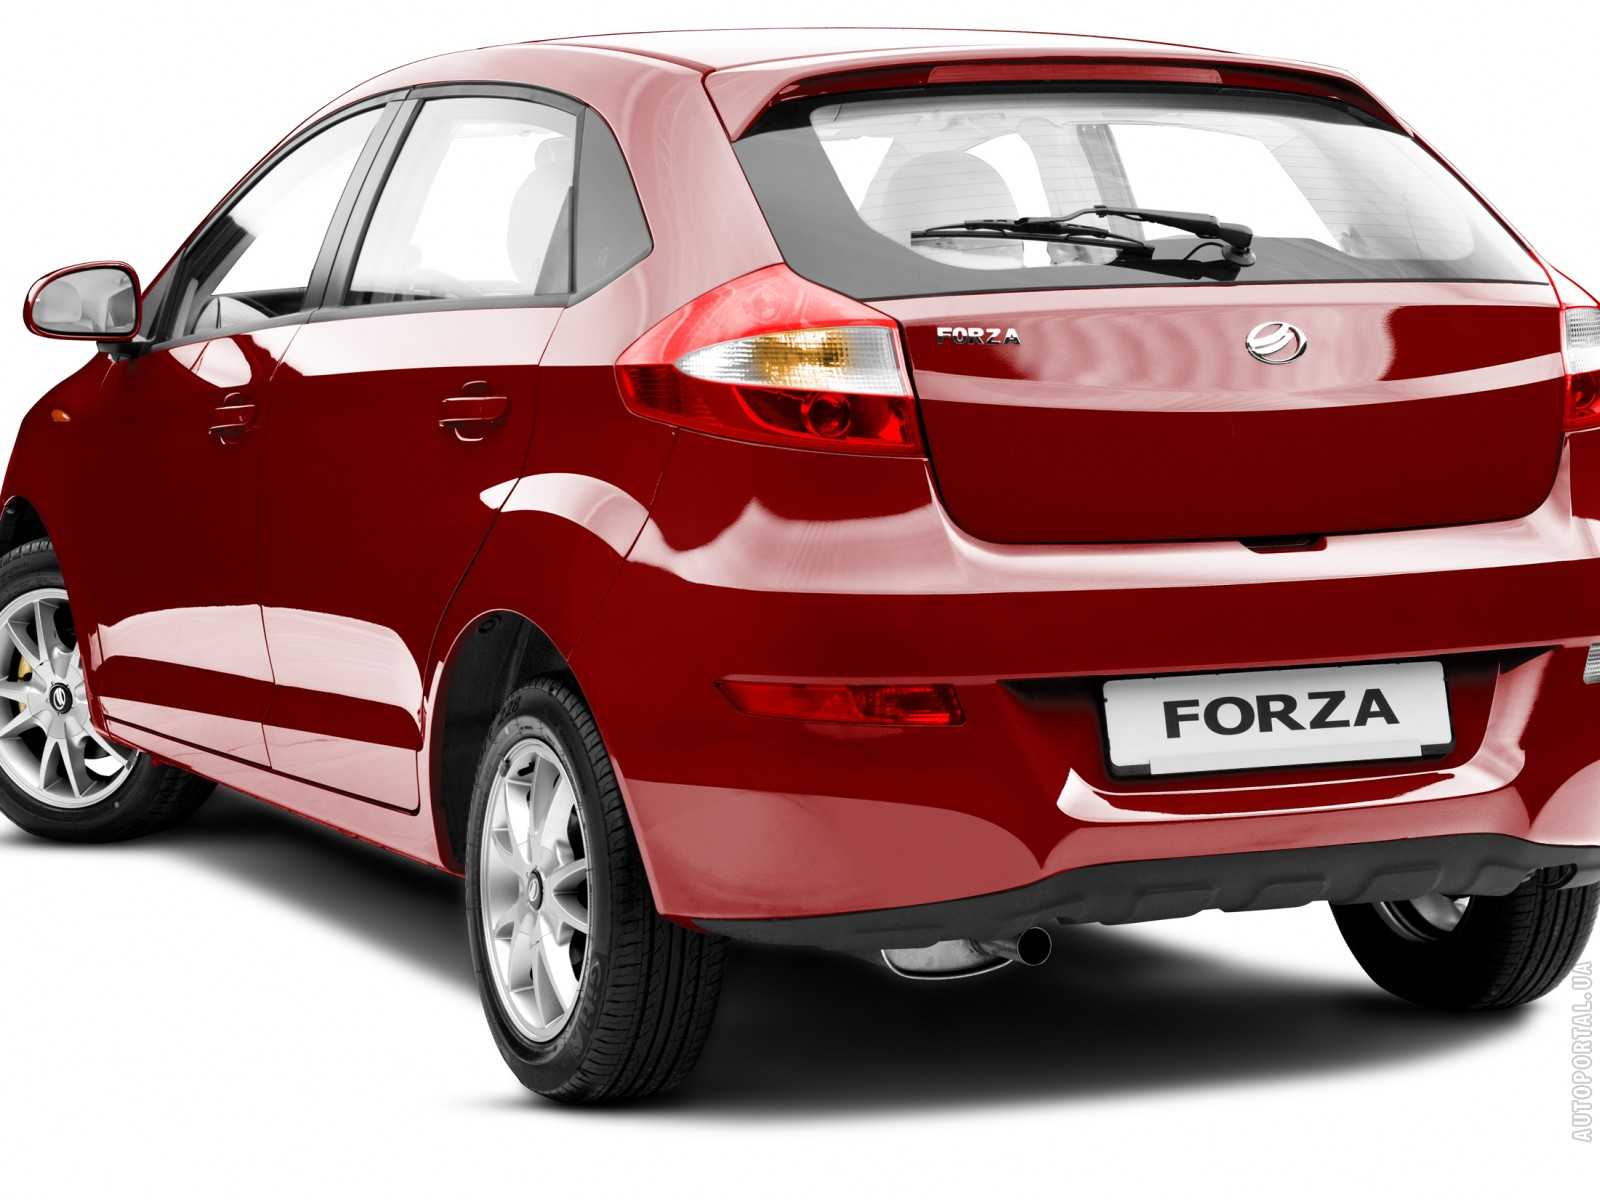 Перечень технических характеристик ЗАЗ Форза, оснащение и стоимость Обзор ZAZ Forza с фотографиями